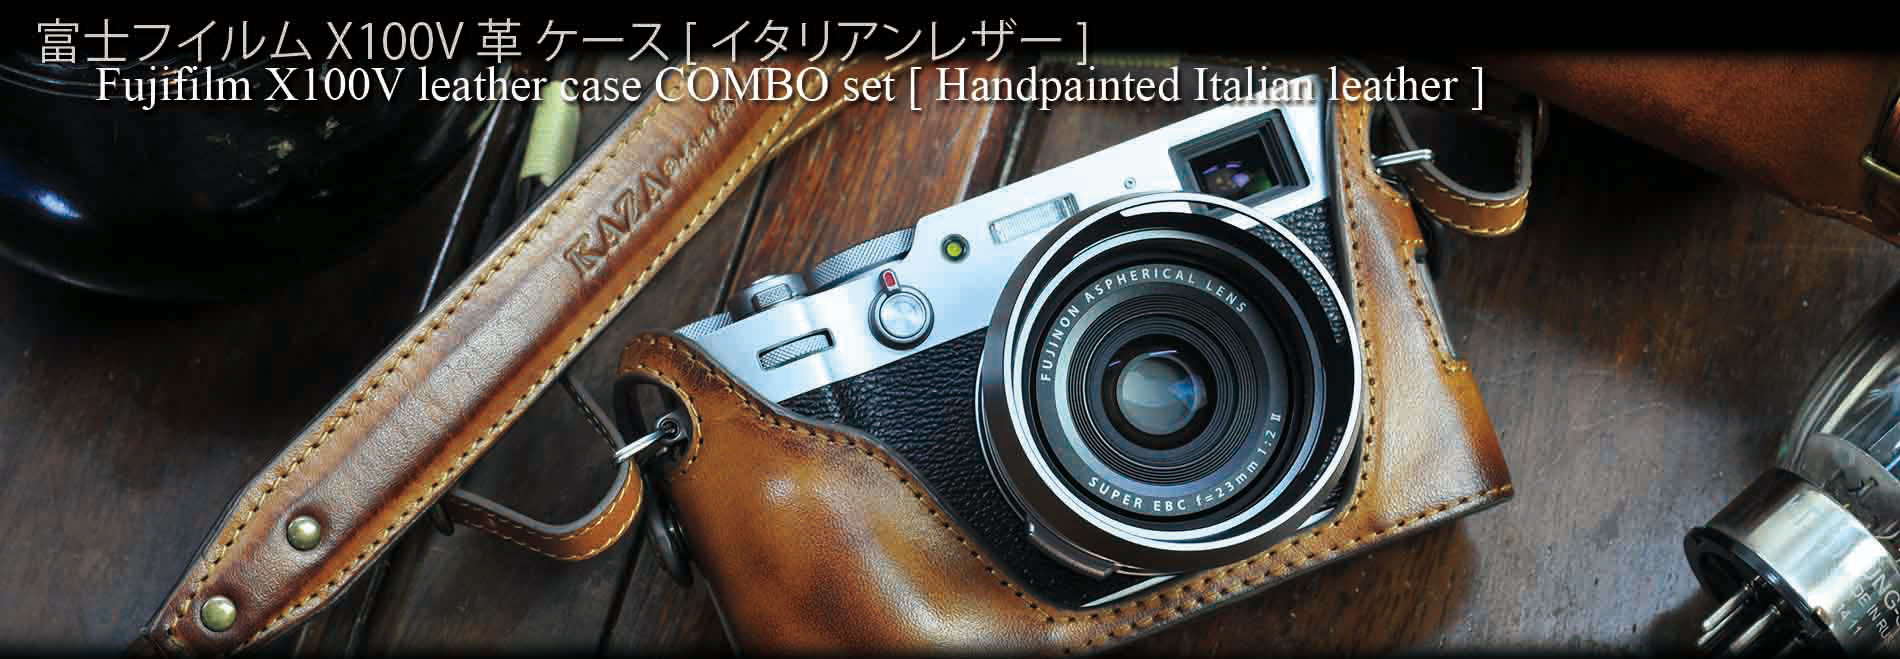 専用】FUJIFILM X100V(シルバー) セット - コンパクトデジタルカメラ